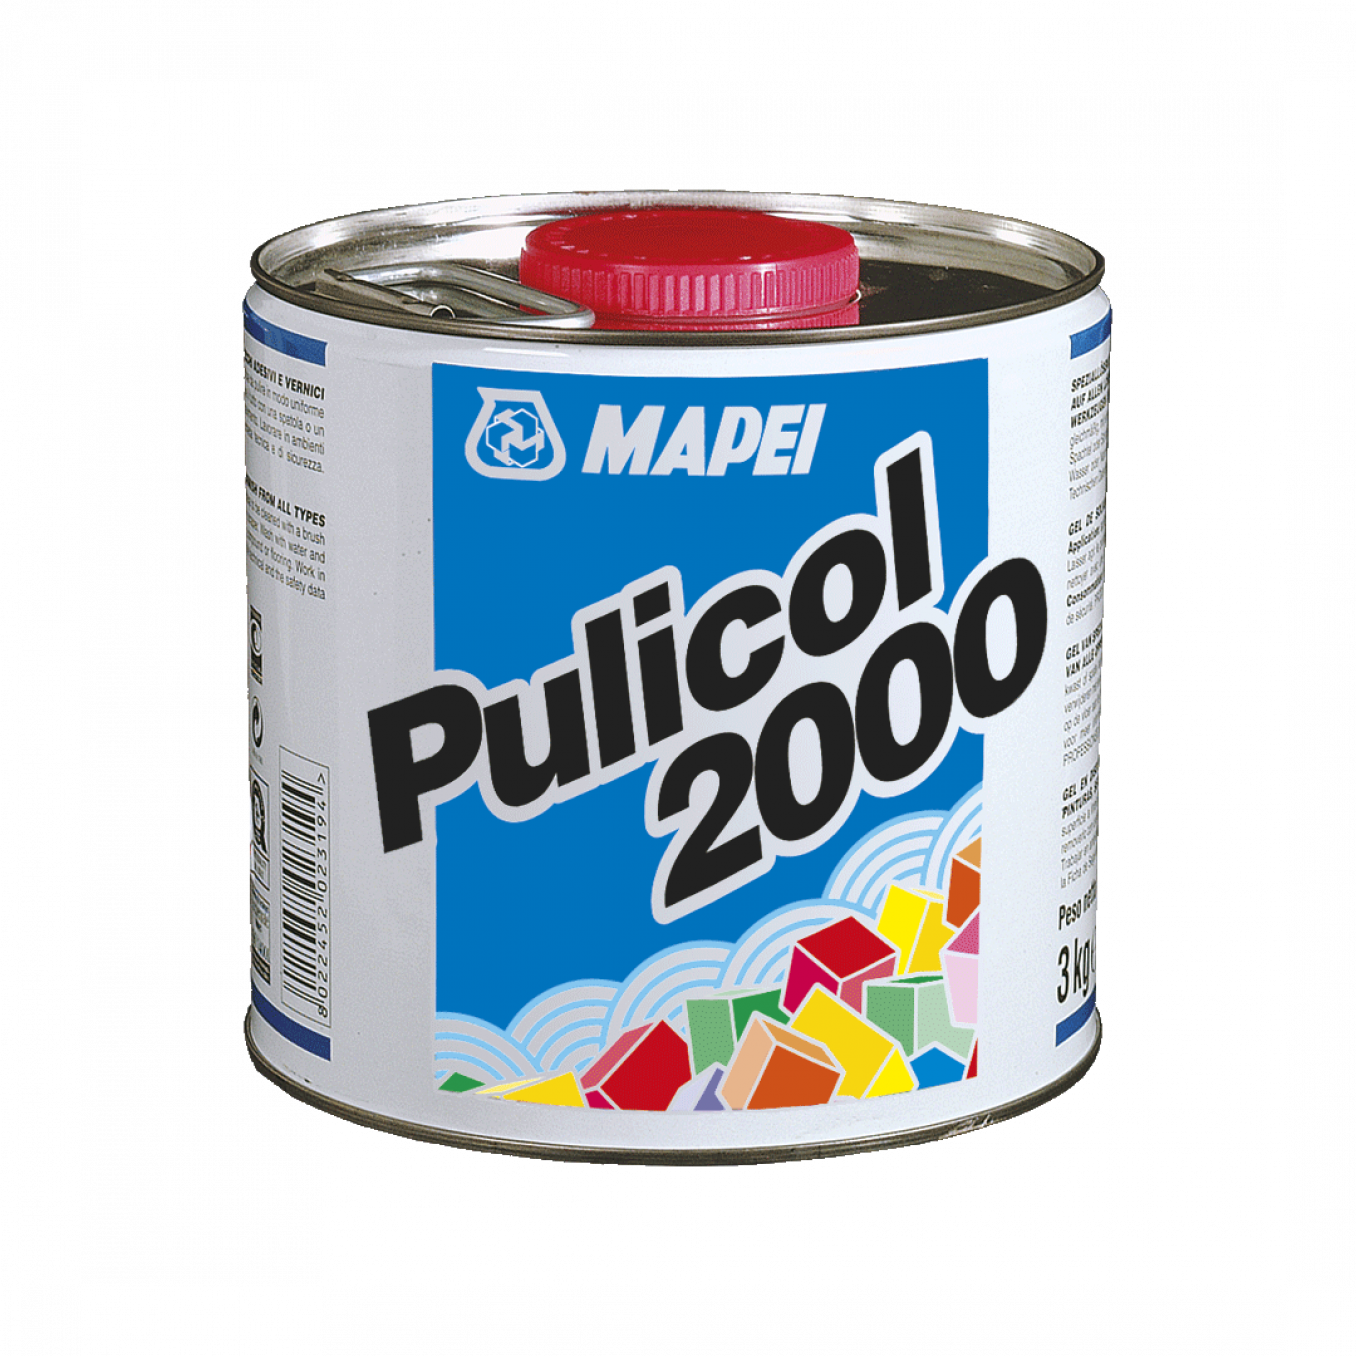 Sredstvo za čišćenje Mapei PULICOL 2000 2.5kg